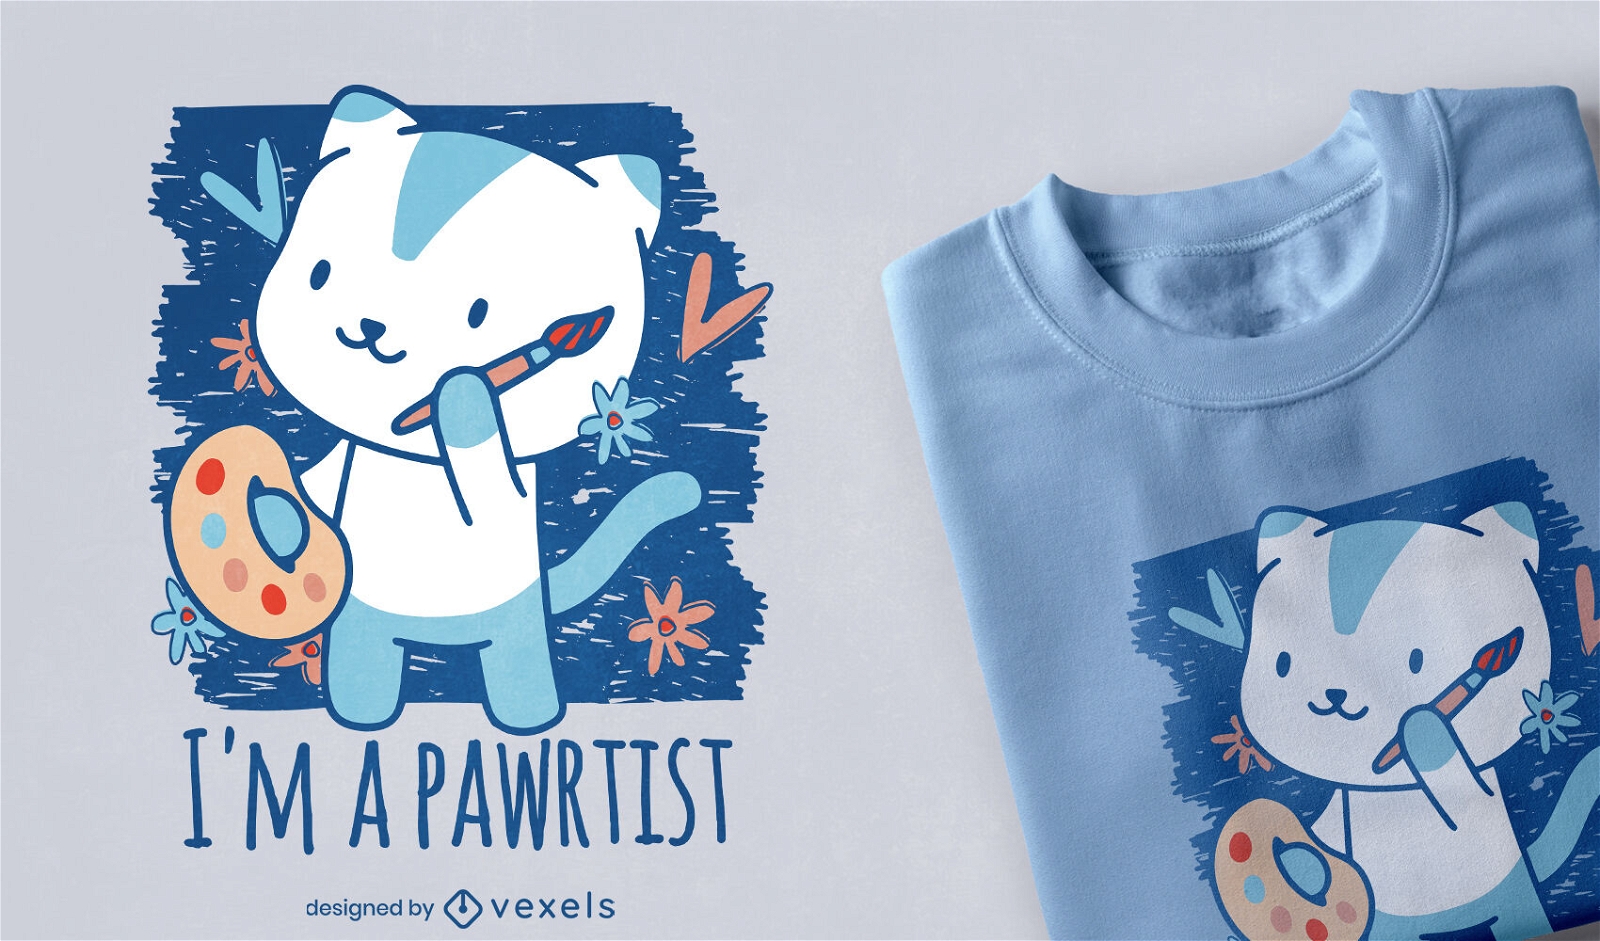 Diseño lindo de la camiseta del artista del gato de Pawrtist